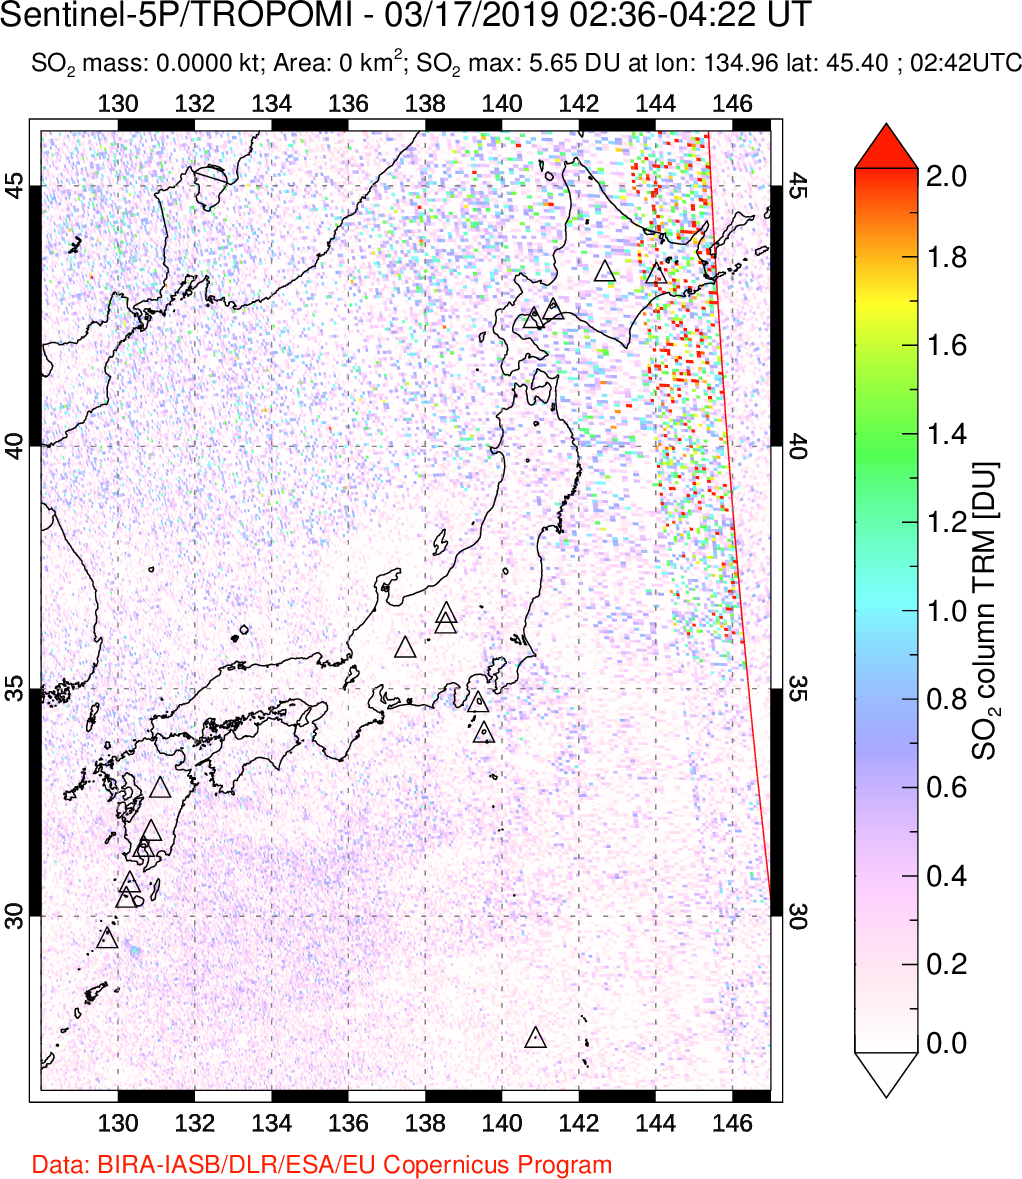 A sulfur dioxide image over Japan on Mar 17, 2019.